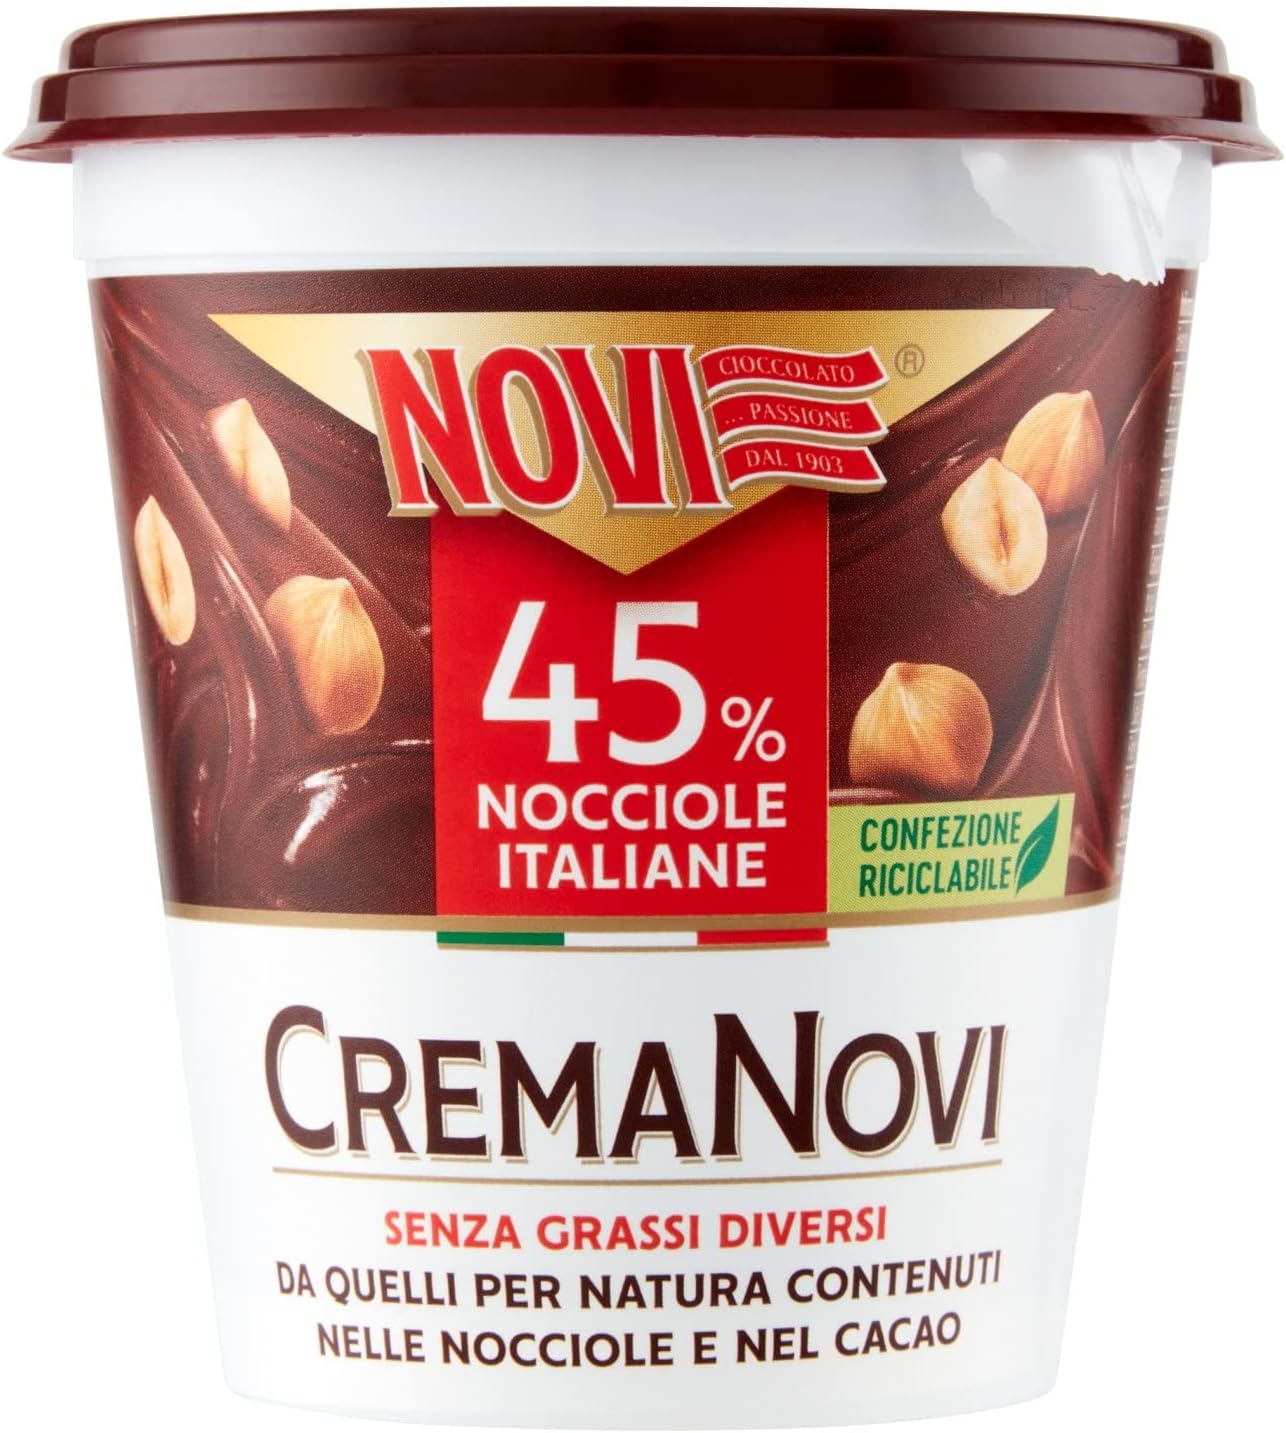 hazelnuts and cocoa spread crema novi 200g